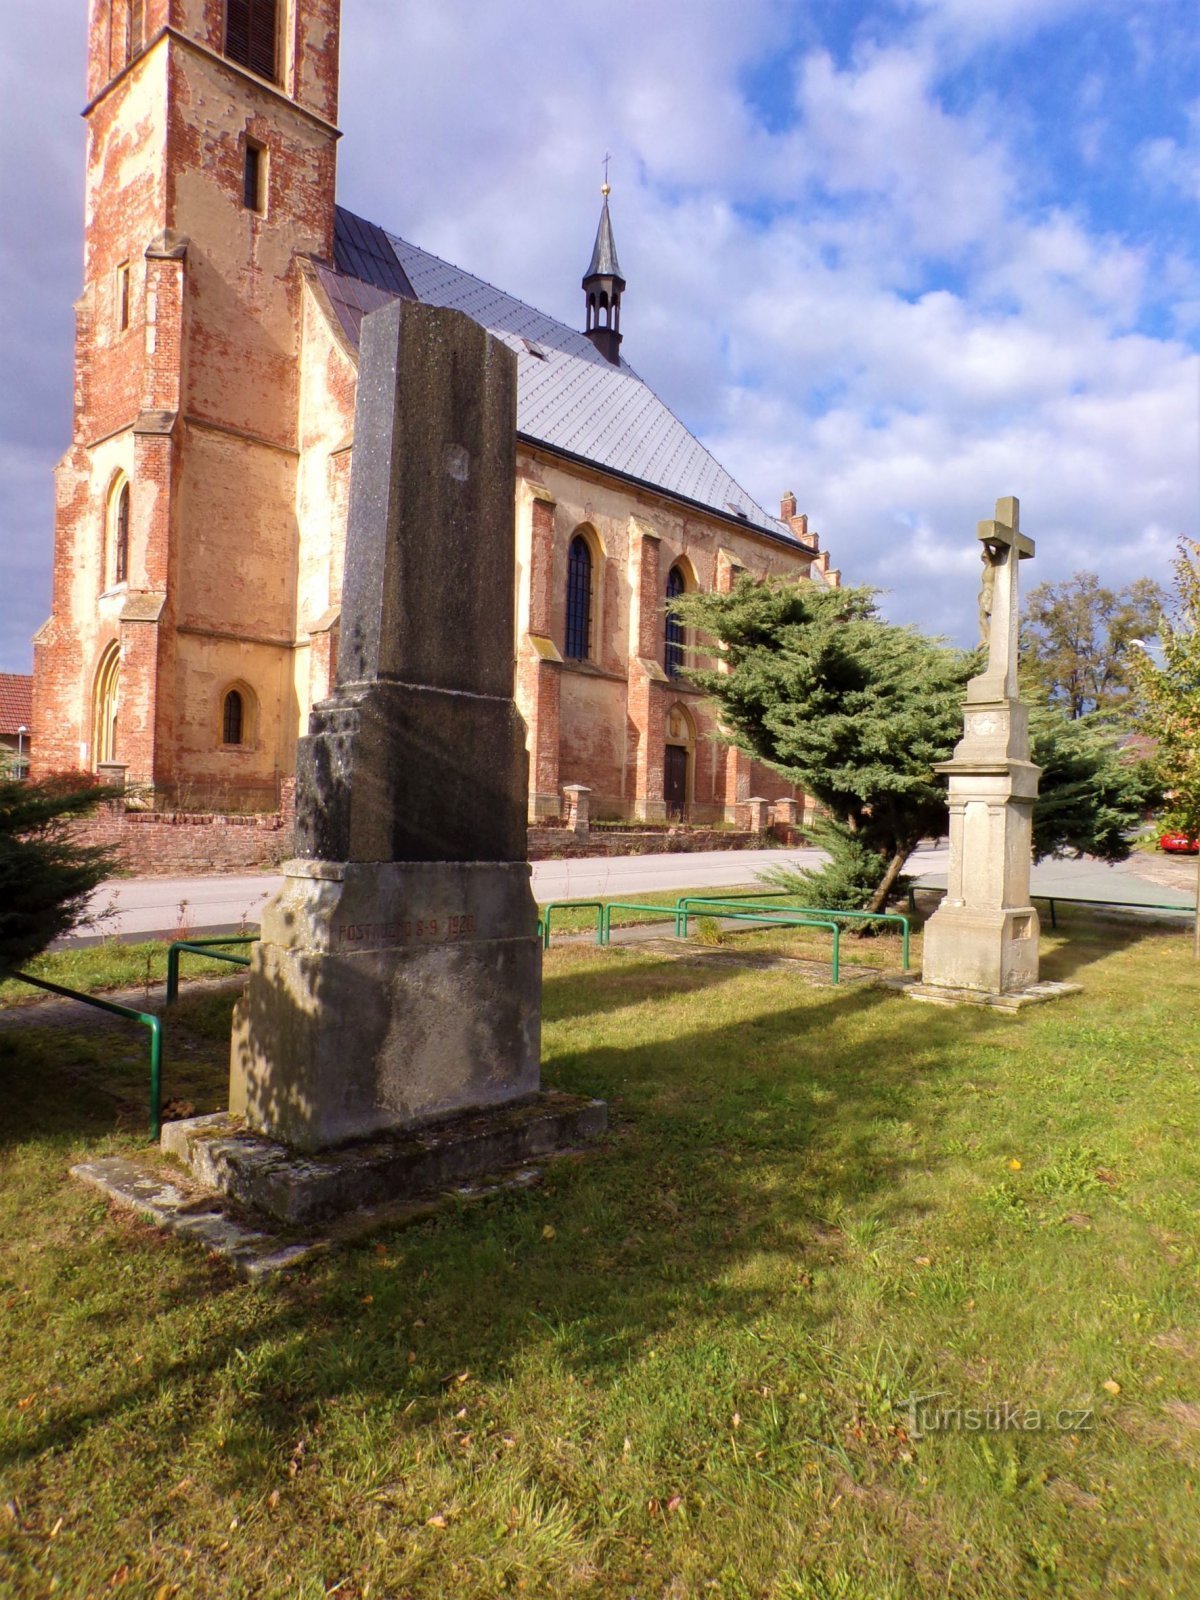 Monumento ai caduti della prima guerra mondiale e croce (Suchá, 1/16.10.2021/XNUMX)